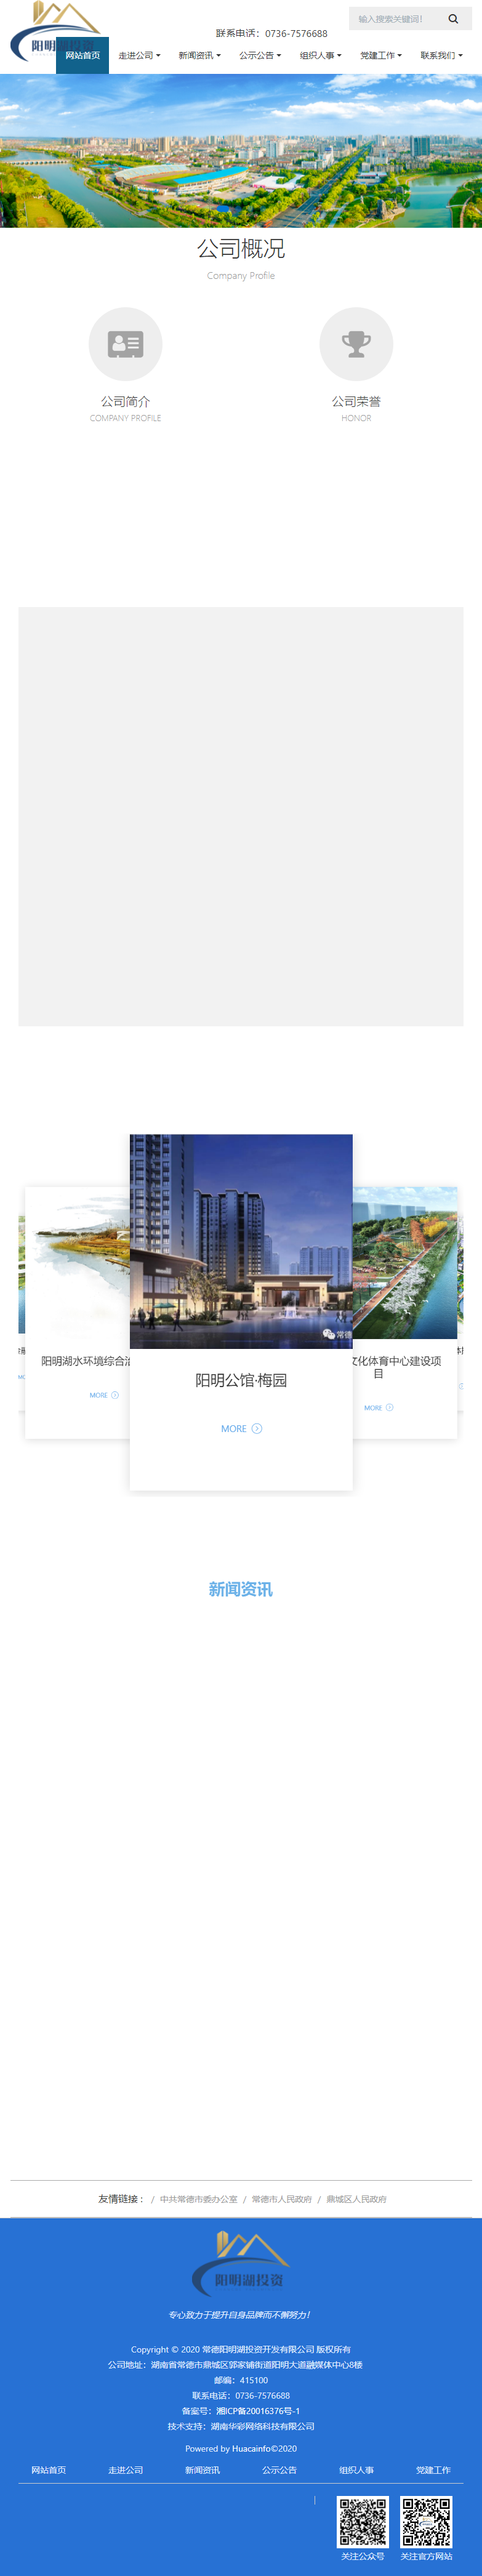 常德阳明湖投资开发有限公司网站案例